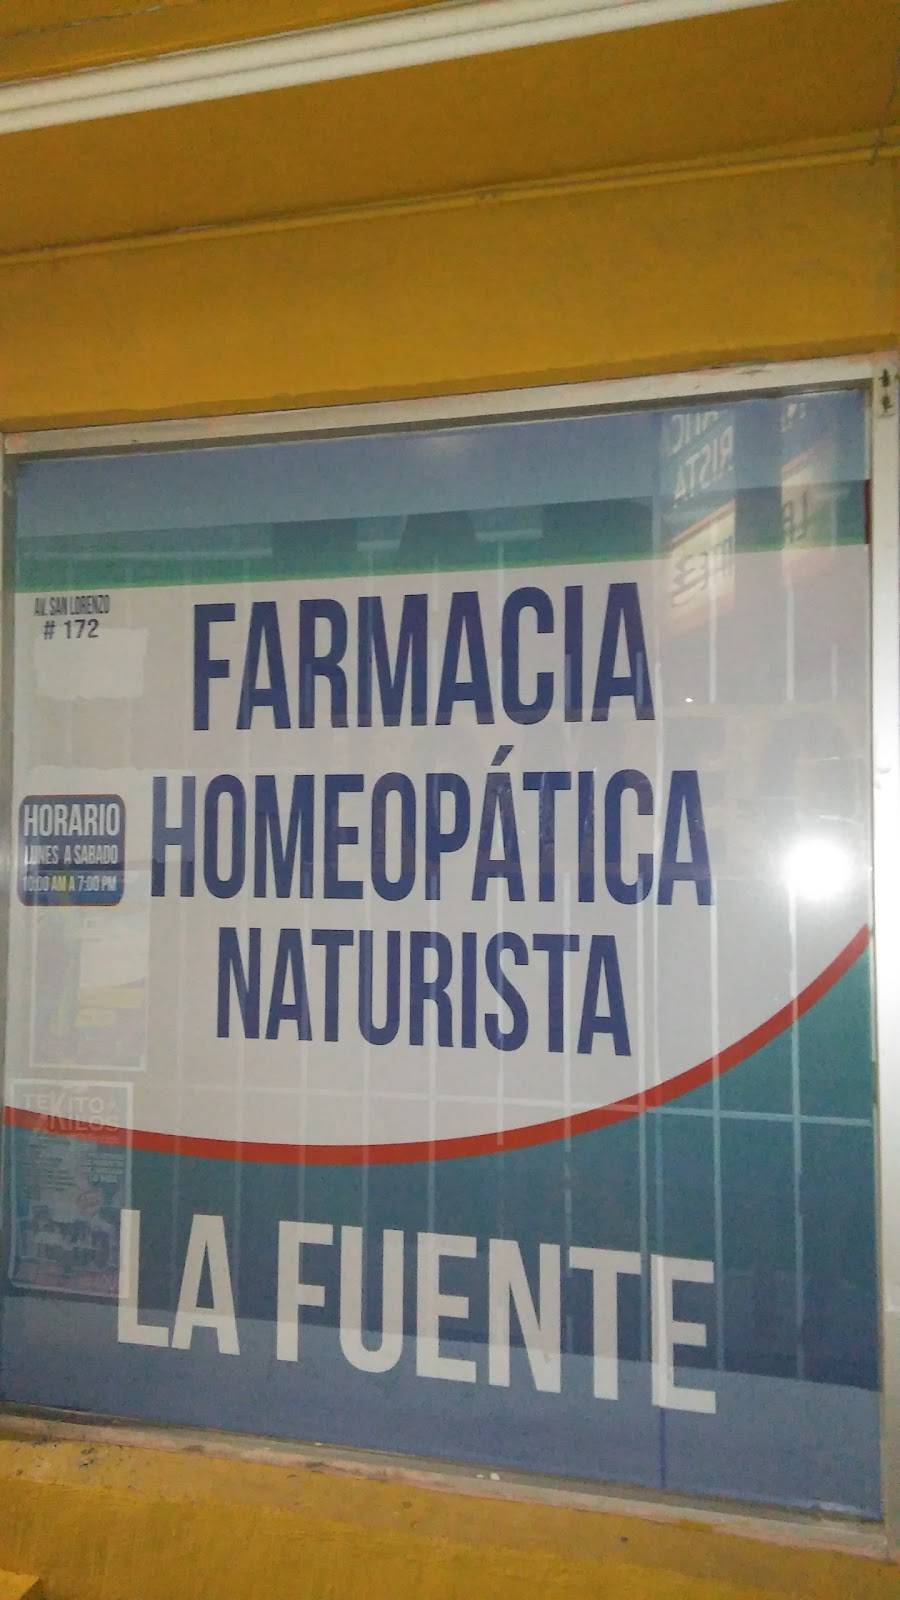 Farmacia Homeopática "La Fuente" | 172, San Lorenzo, Era de San Lorenzo, 32320 Cd Juárez, Chih., Mexico | Phone: 656 617 1395